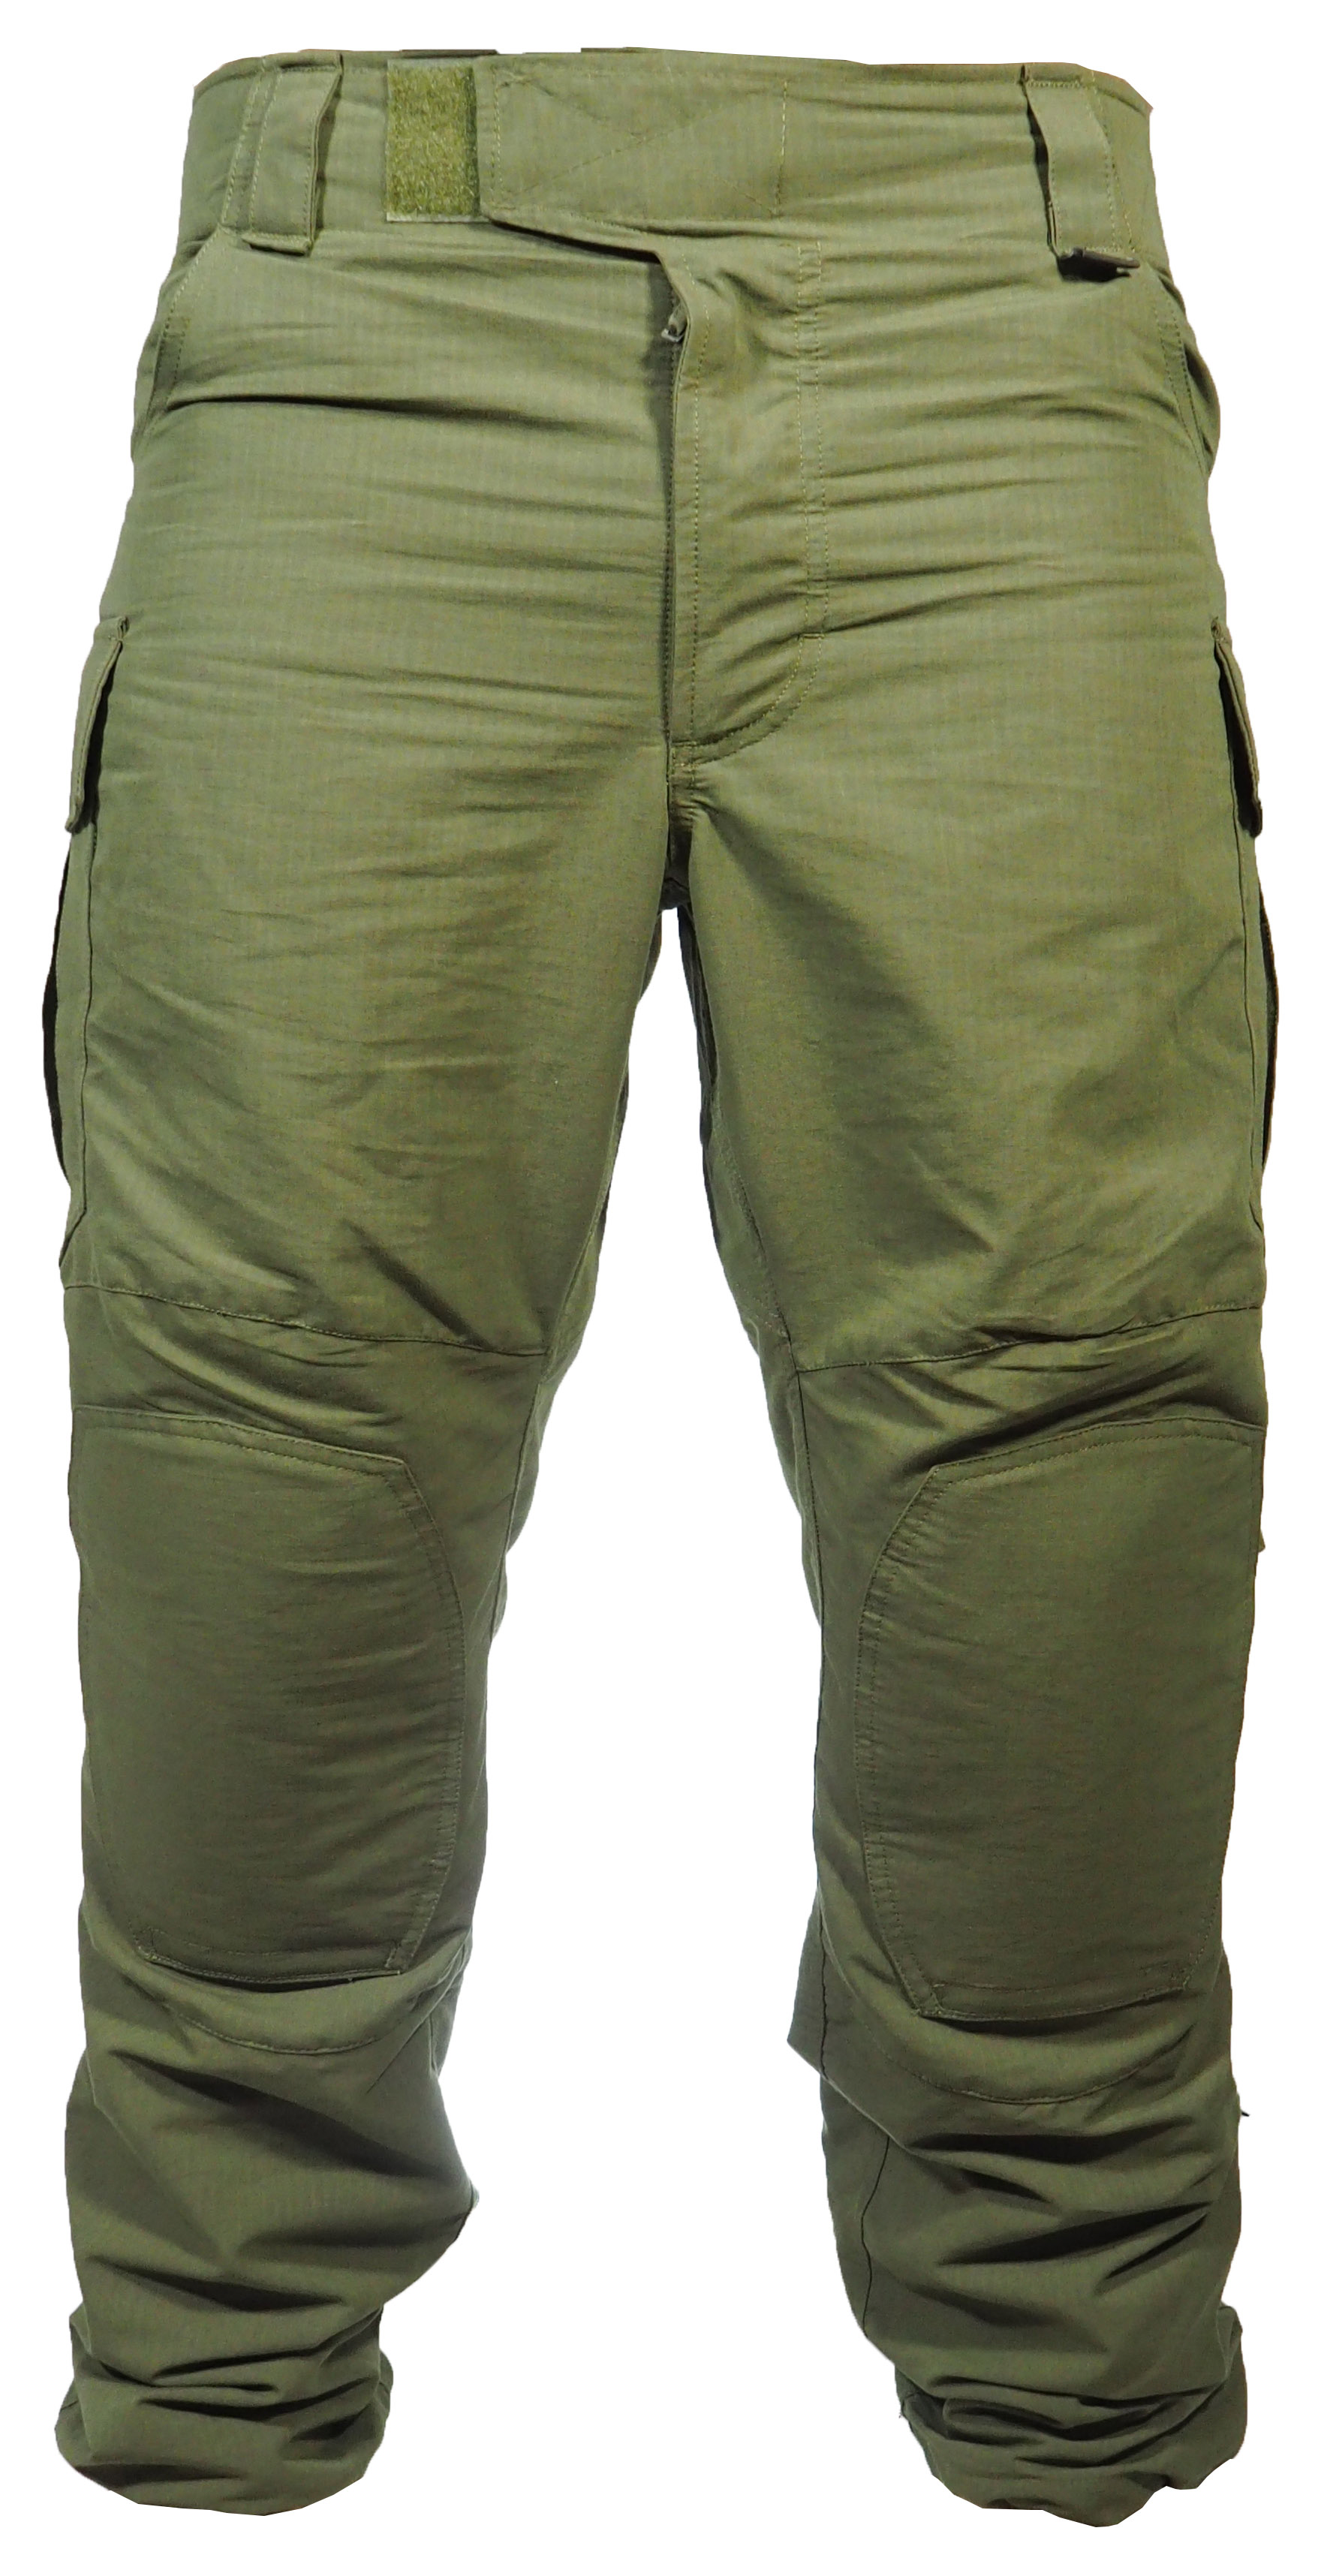 מכנס  מדי פשיטה  ג טקטי ללא ברכיות מדי לחימה צבע ירוק זית דגם  Keela